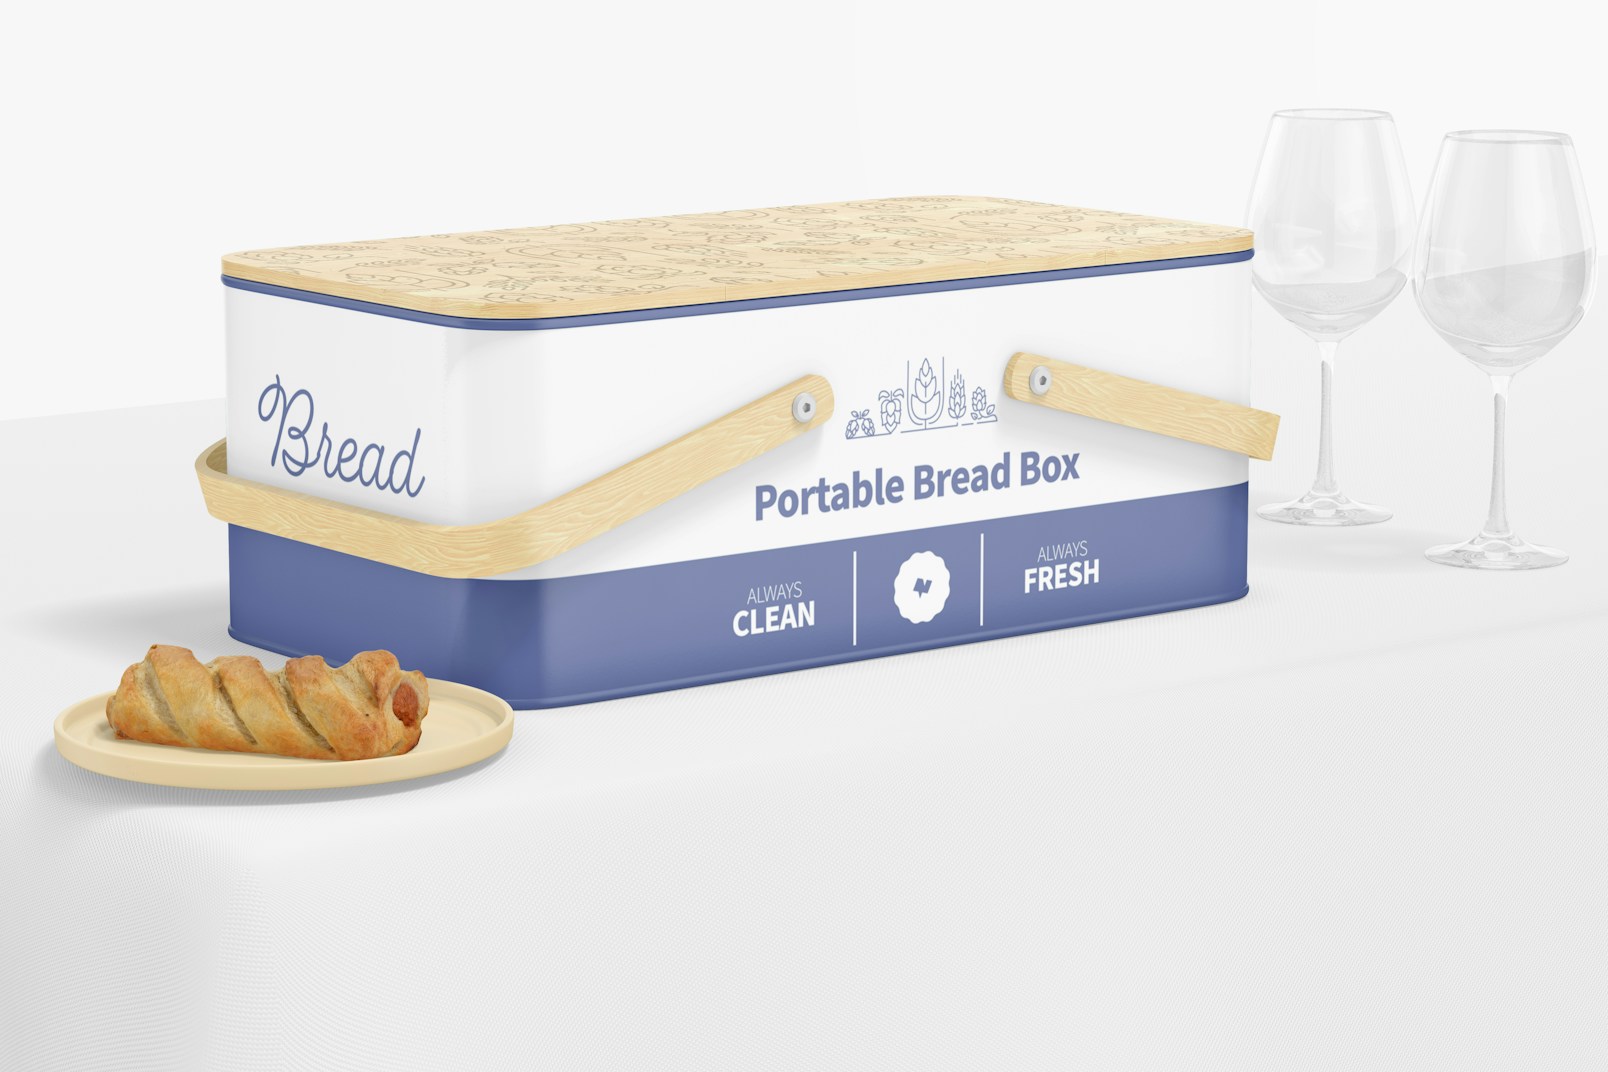 Portable Bread Box Mockup, with Wine Glasses